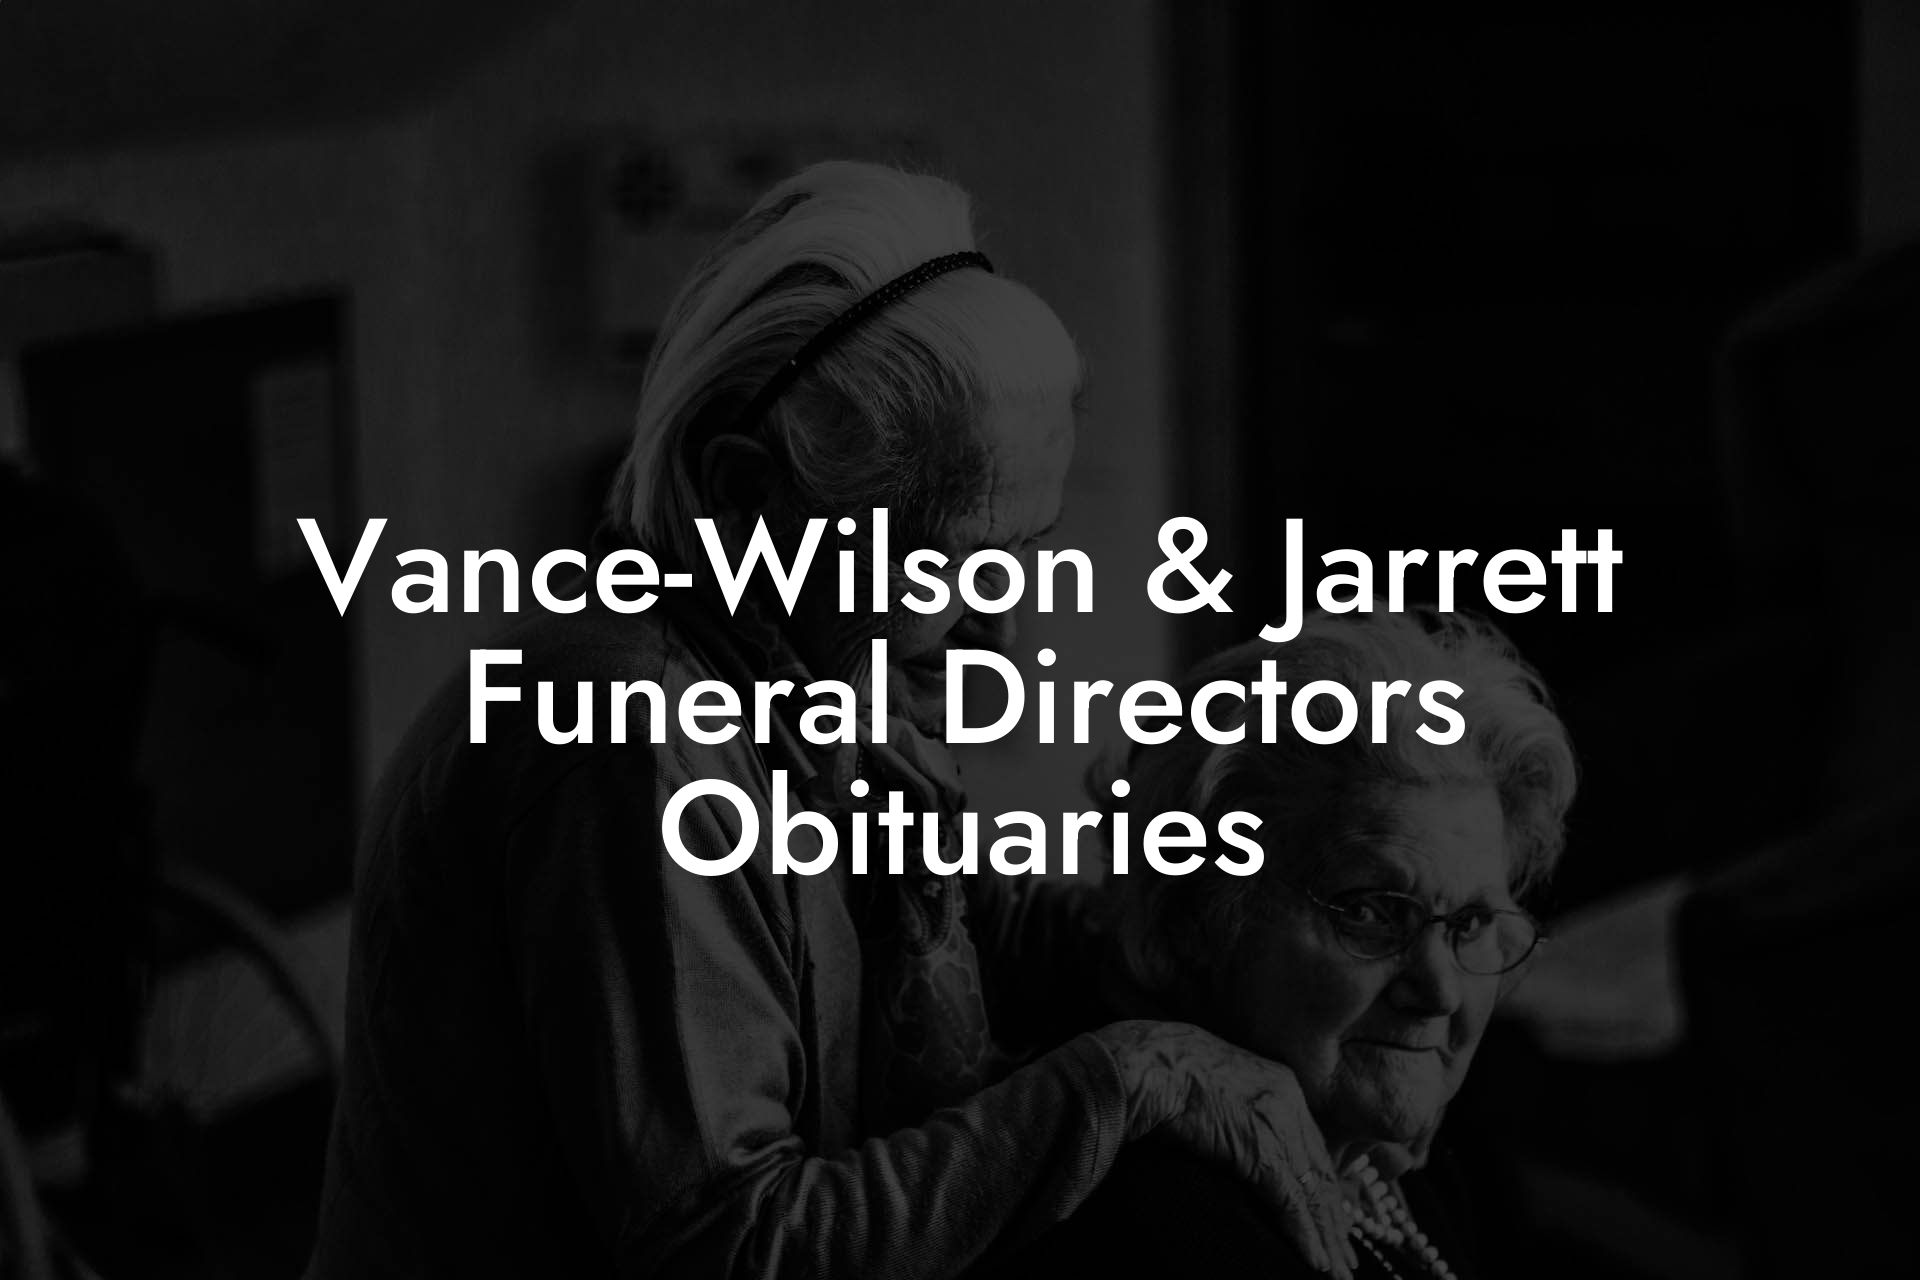 Vance-Wilson & Jarrett Funeral Directors Obituaries